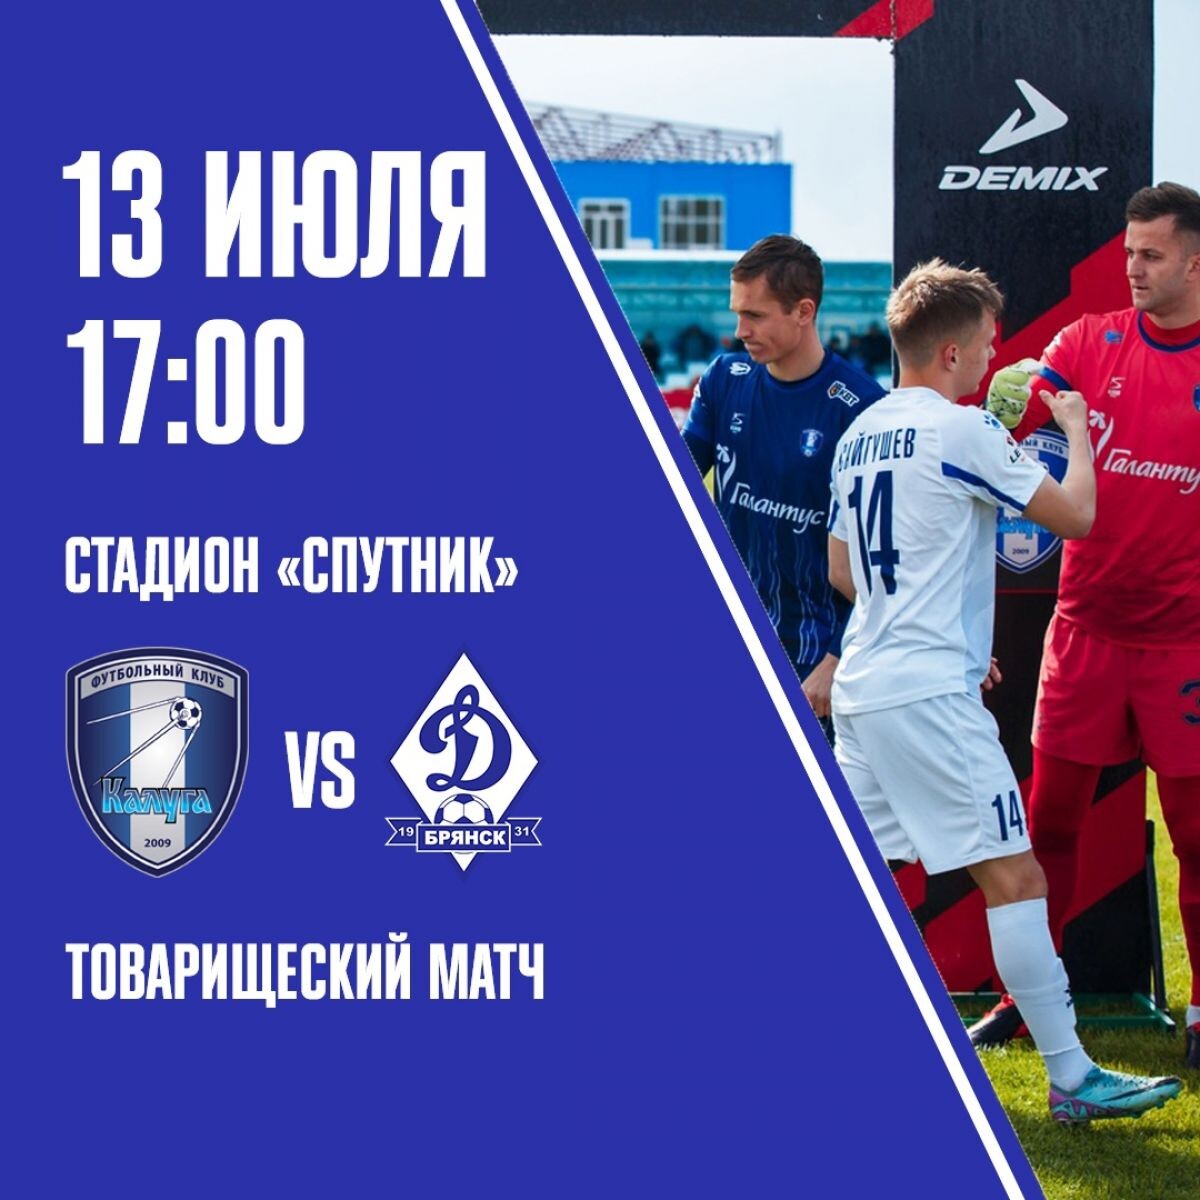 В субботу, 13 июля, «Динамо-Брянск» в рамках подготовки к сезону проведёт контрольный матч против ФК «Калуга».  Матч пройдёт на выезде, начало матча в 17.00.